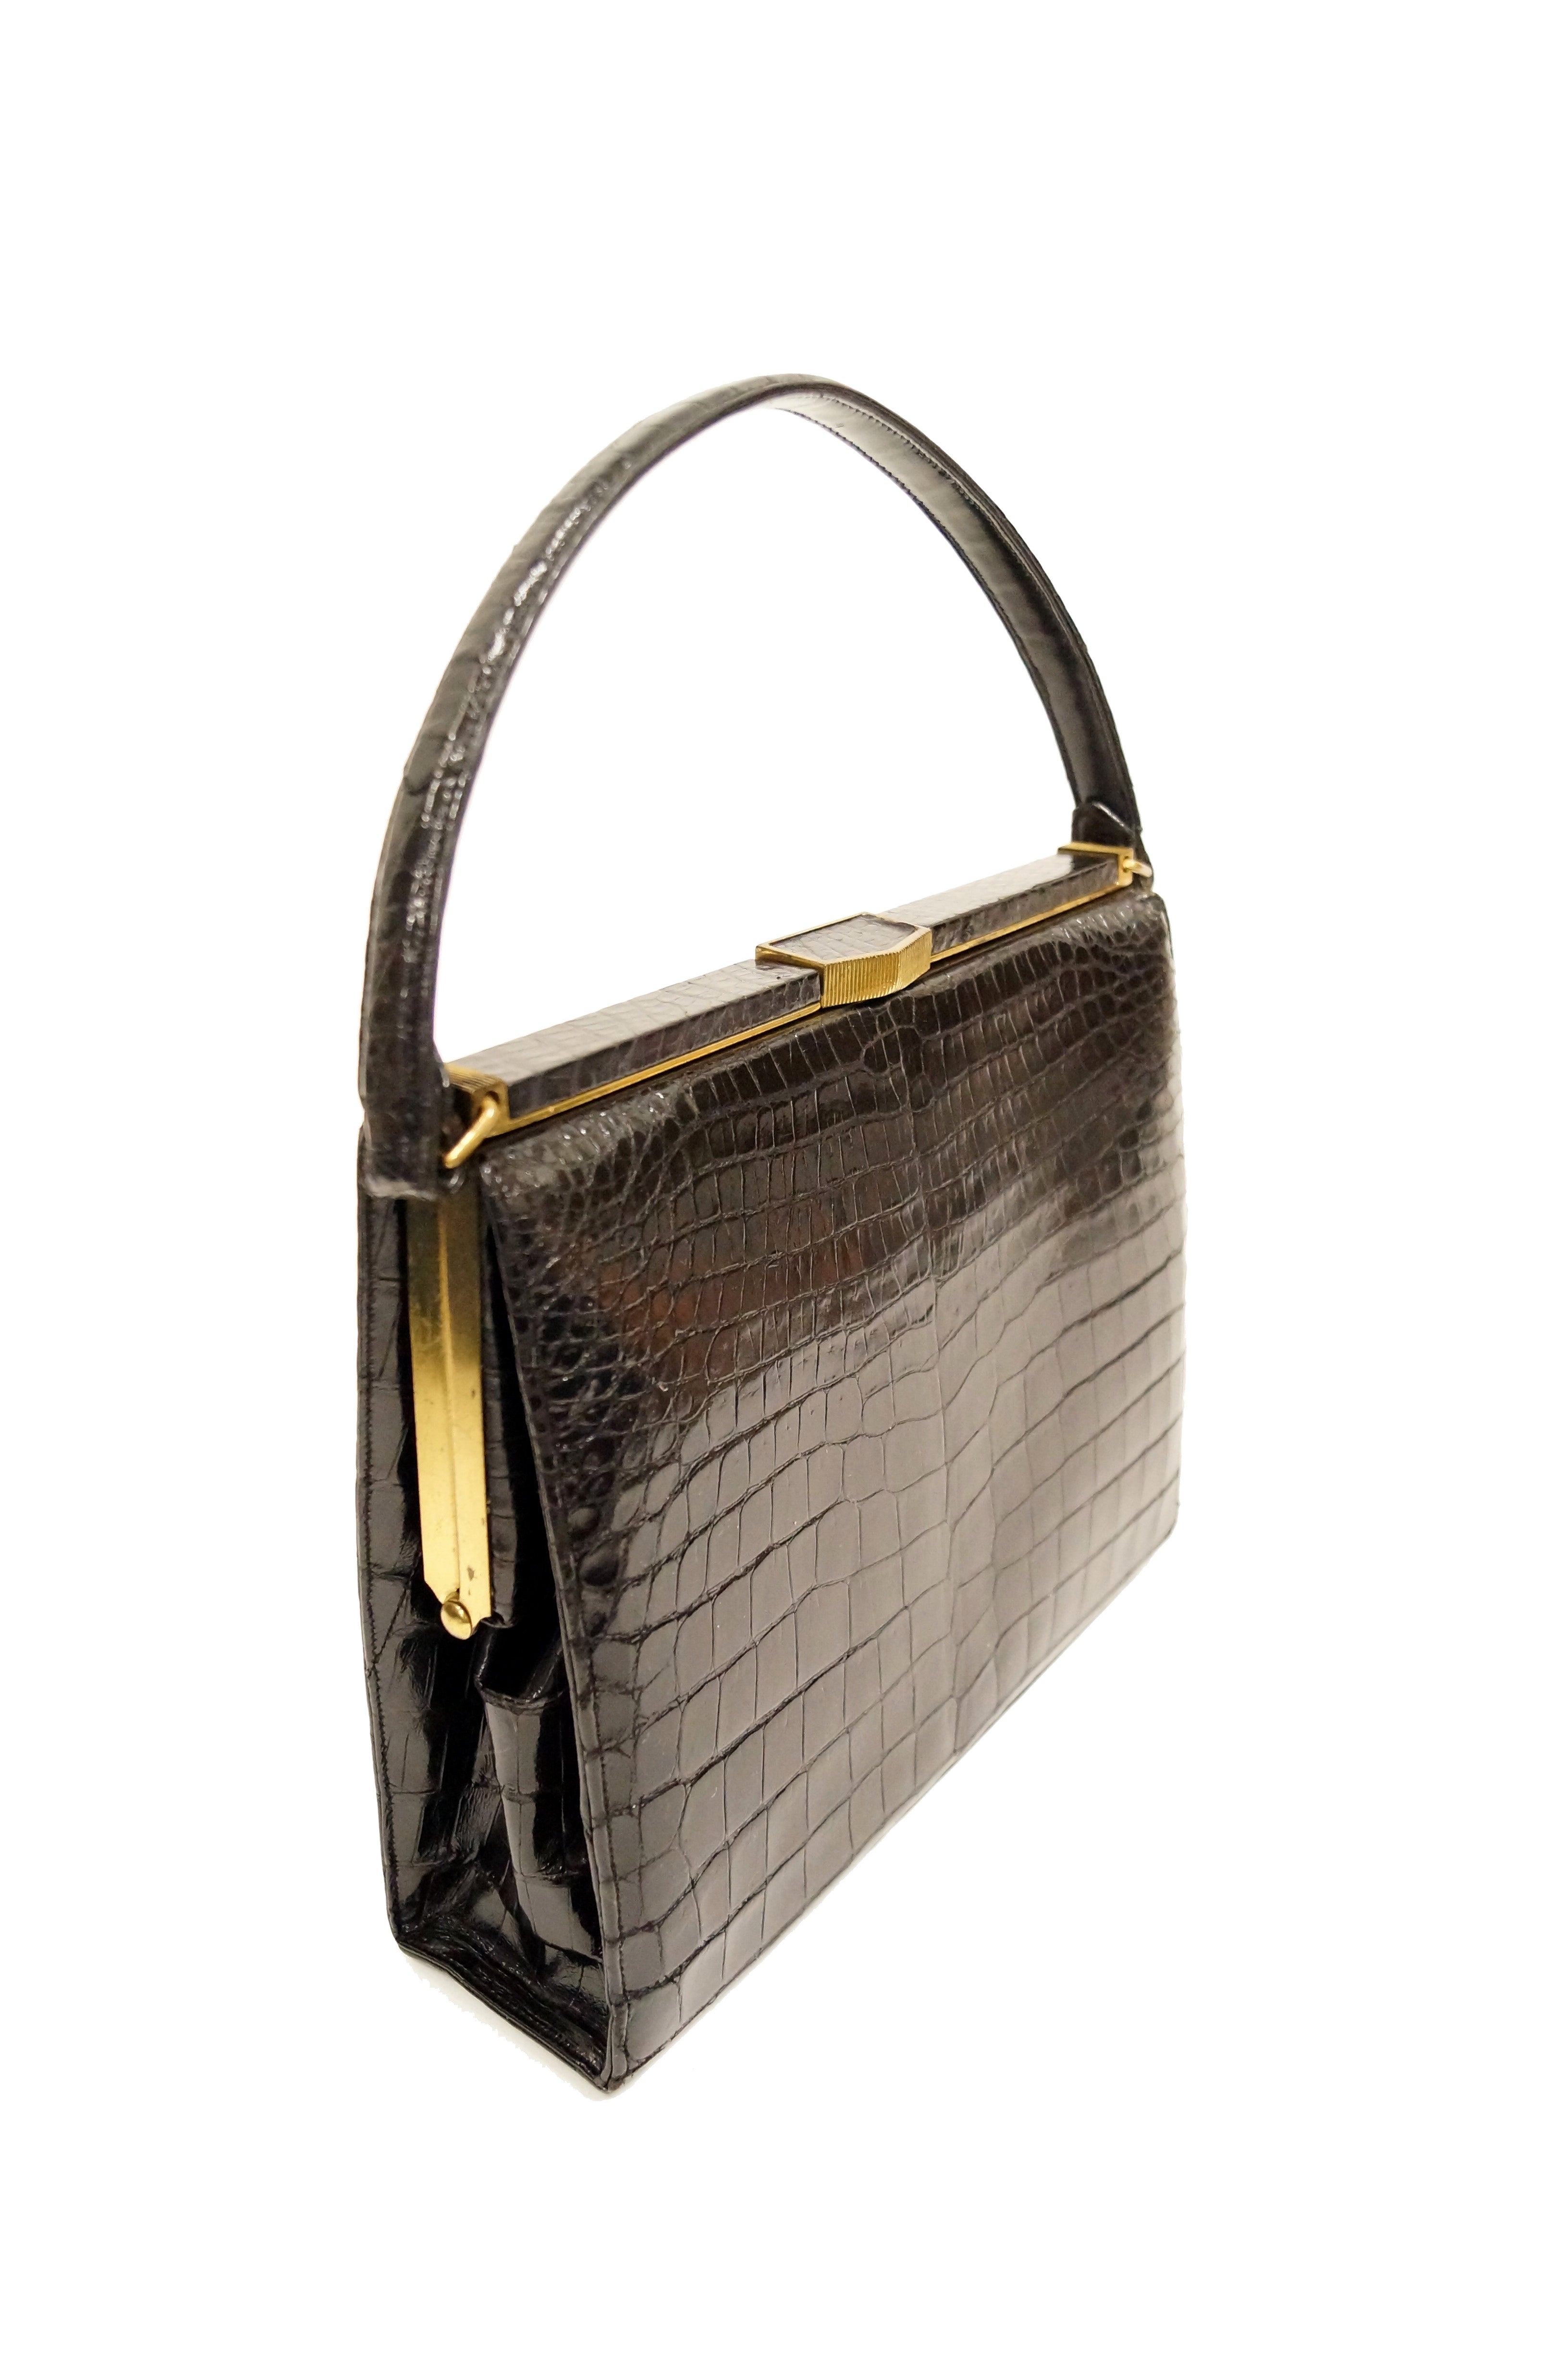 Vintage Ostrich Leather Handbag/Purse Lucille de Paris